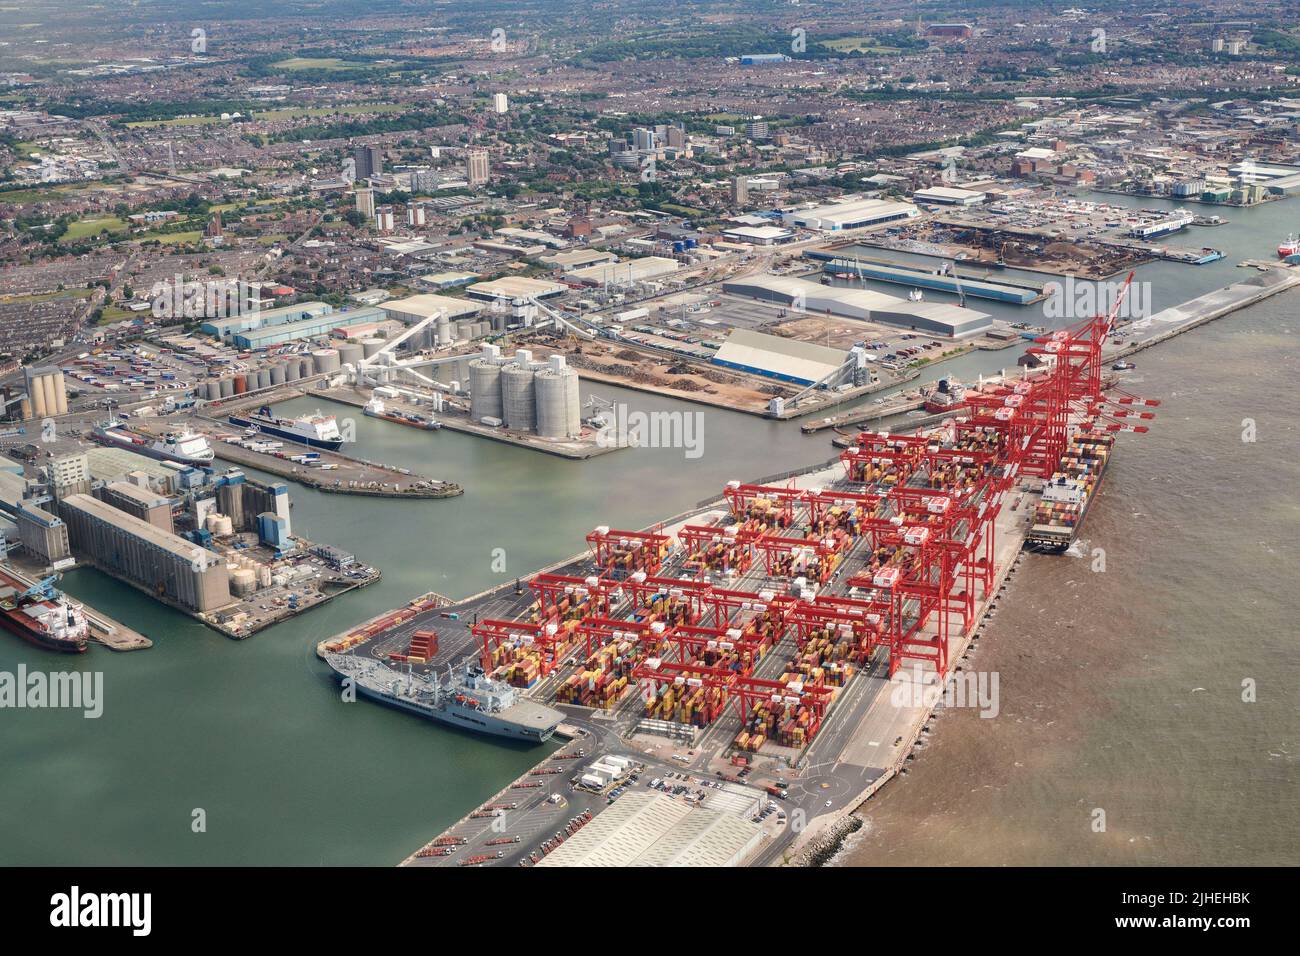 Photographie aérienne de Peel Port à Seaforth Docks, Liverpool, Mersey Side, nord-ouest de l'Angleterre, Royaume-Uni Banque D'Images